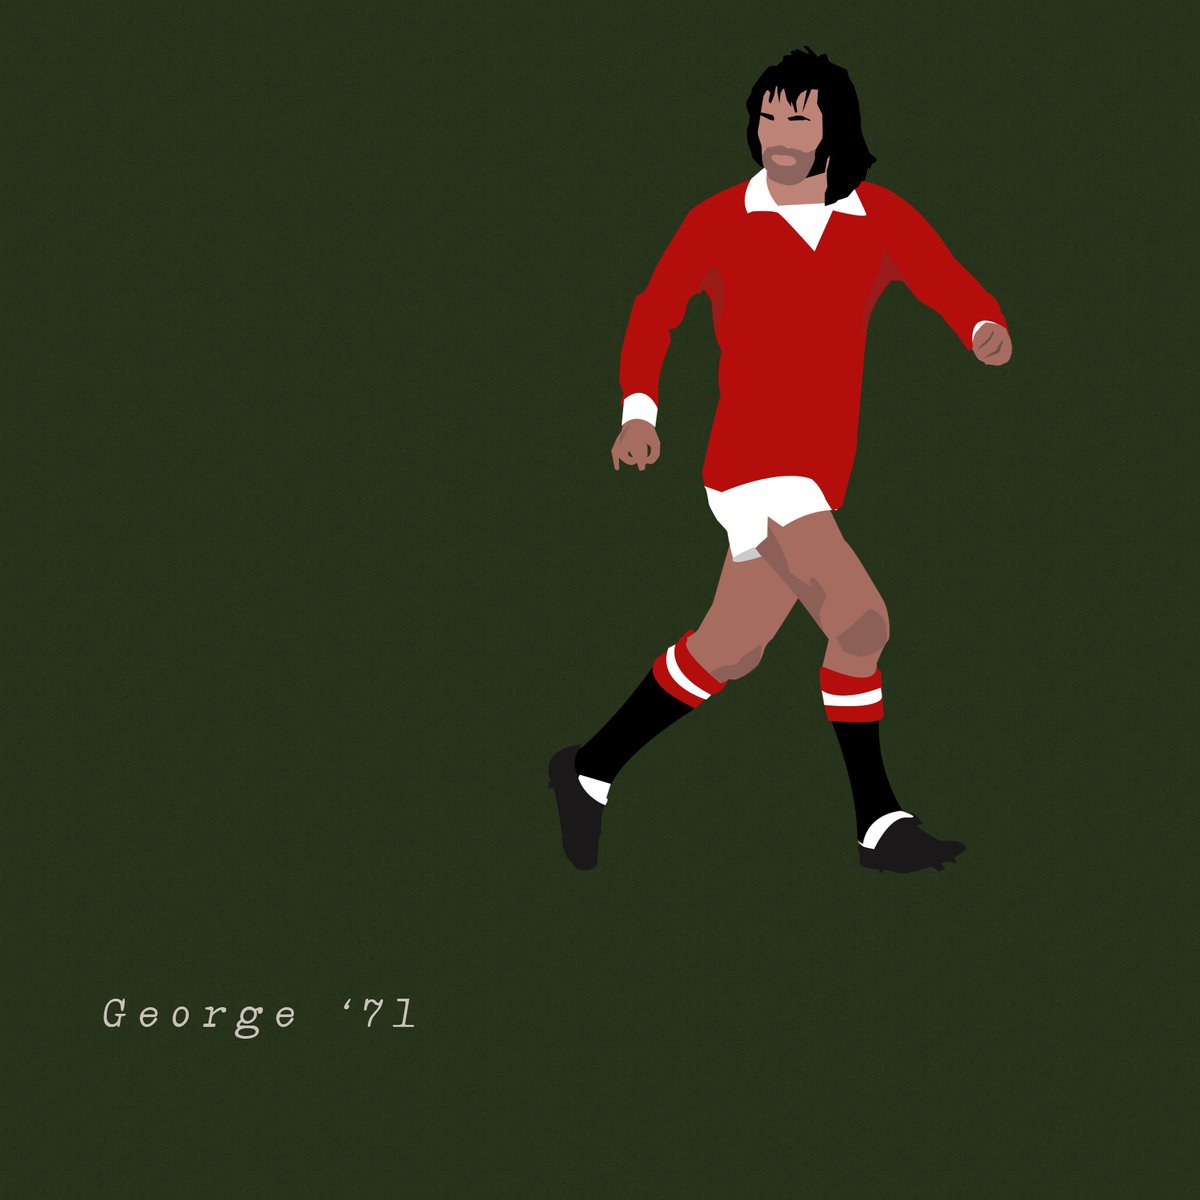 George Best, Manchester United 1971 #manchesterunited #fanart #mufc #georgebest #manutd #nft #nftart #openseaartists opensea.io/assets/0x495f9…